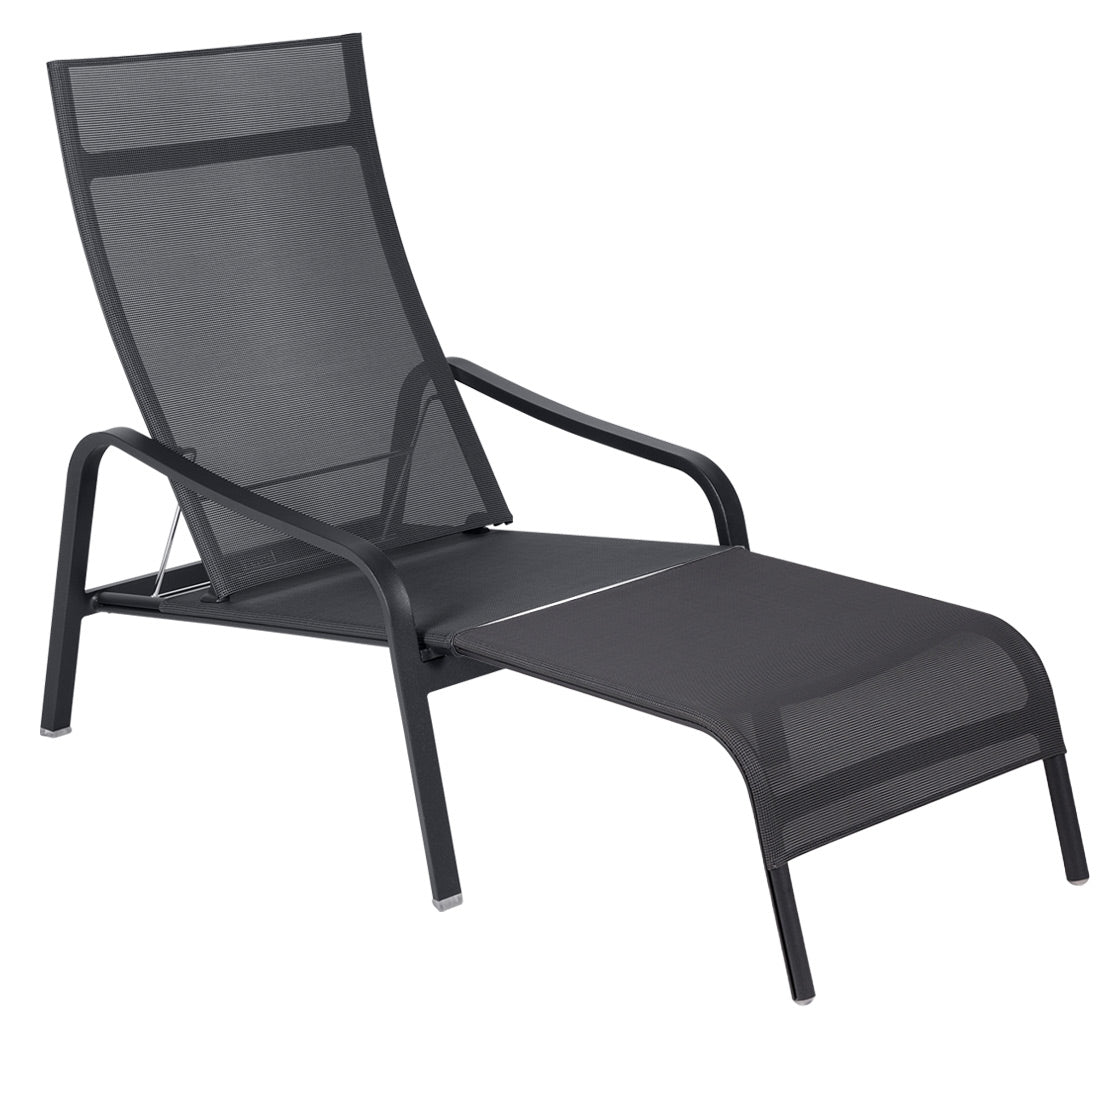 Fermob Alizé  Deck Chair